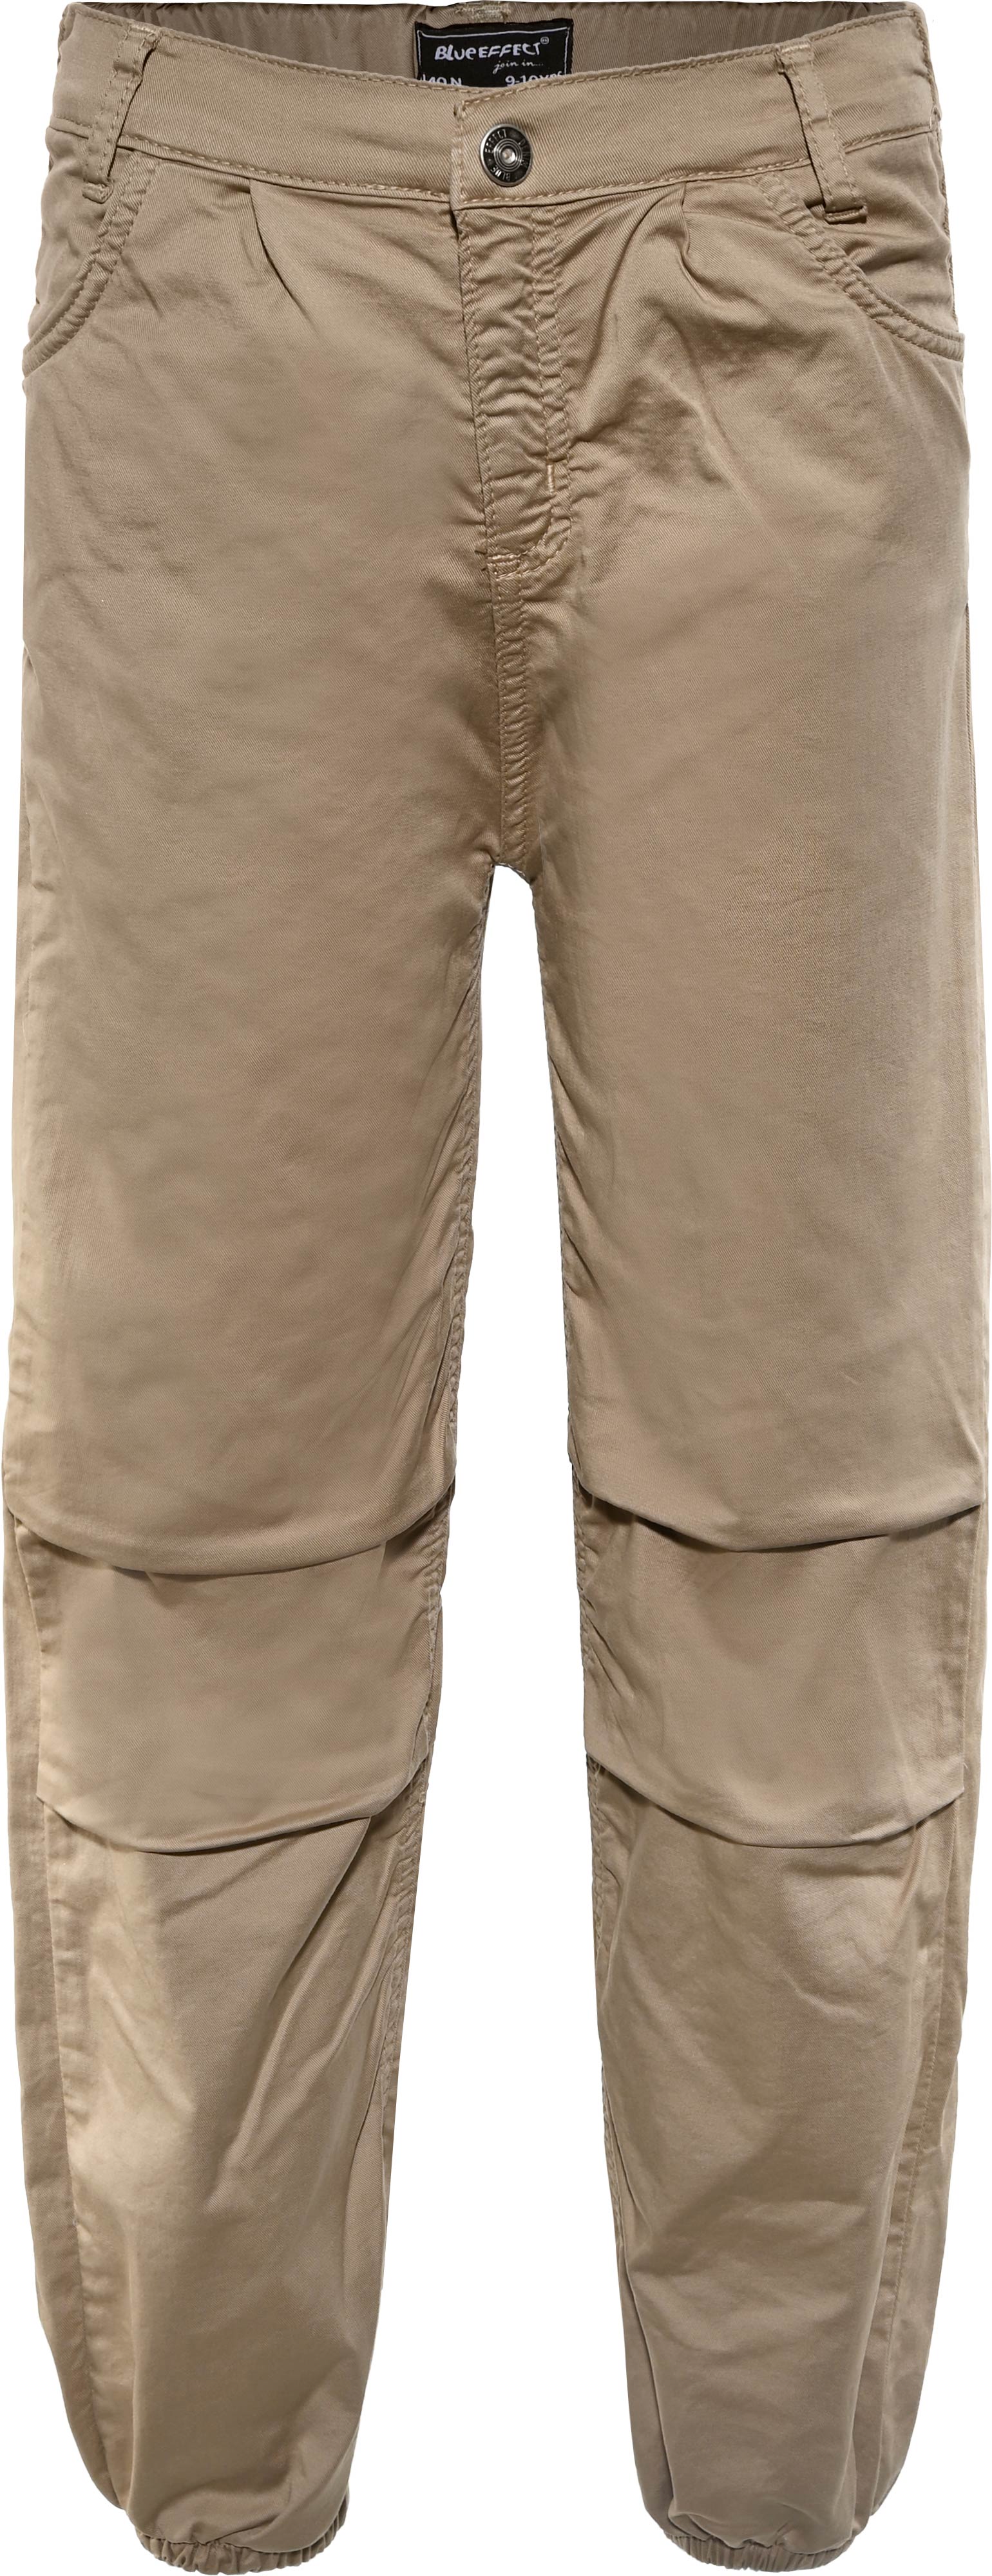 2874-Boys Parachute Pant verfügbar in Normal